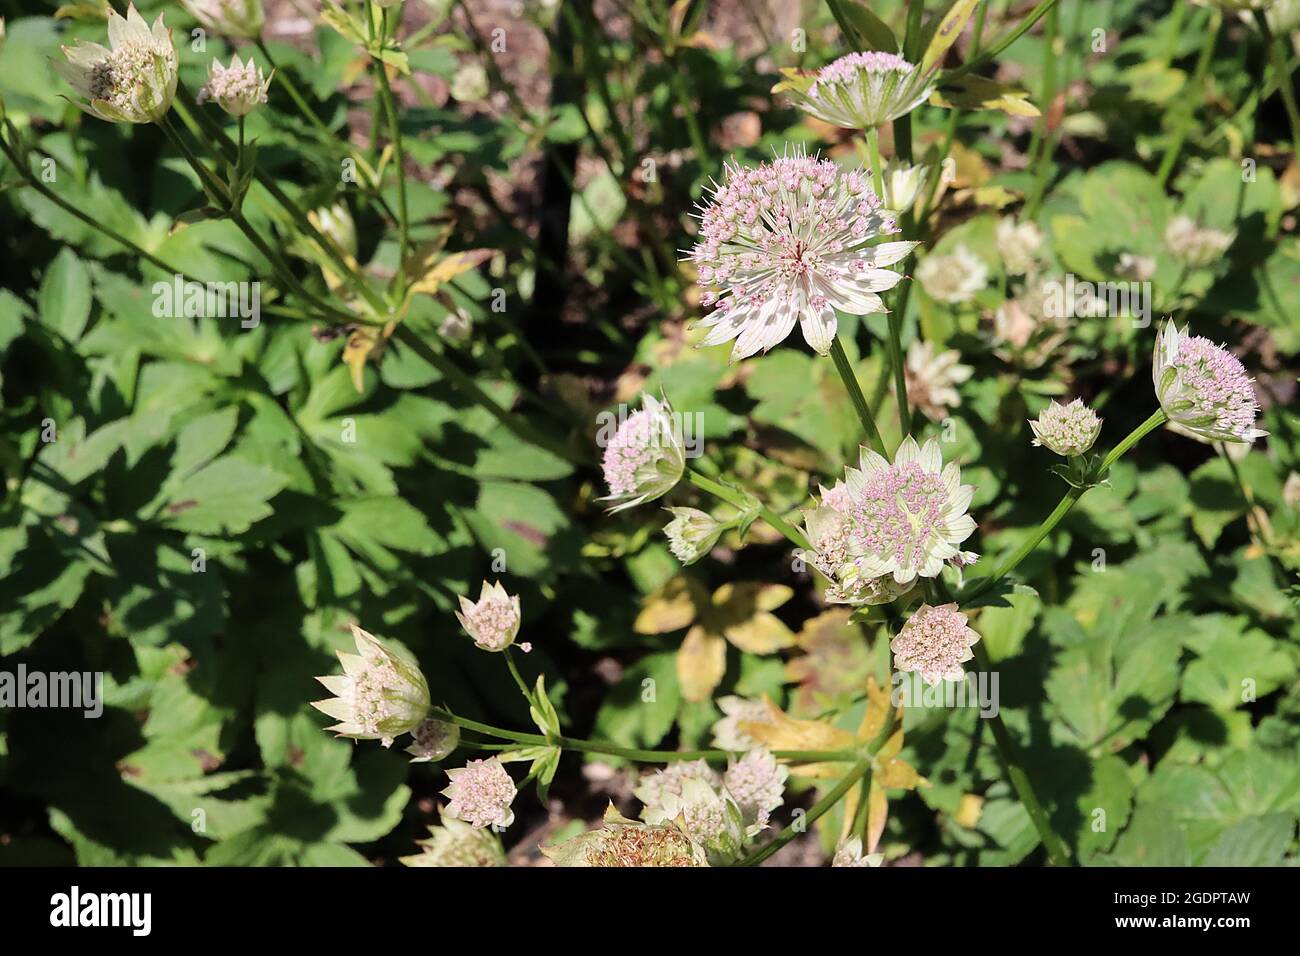 Astrantia Major ‘Buckland’ masterwort Buckland – fiori tubolari rosa pallido con bracche bianche con punta verde, luglio, Inghilterra, Regno Unito Foto Stock